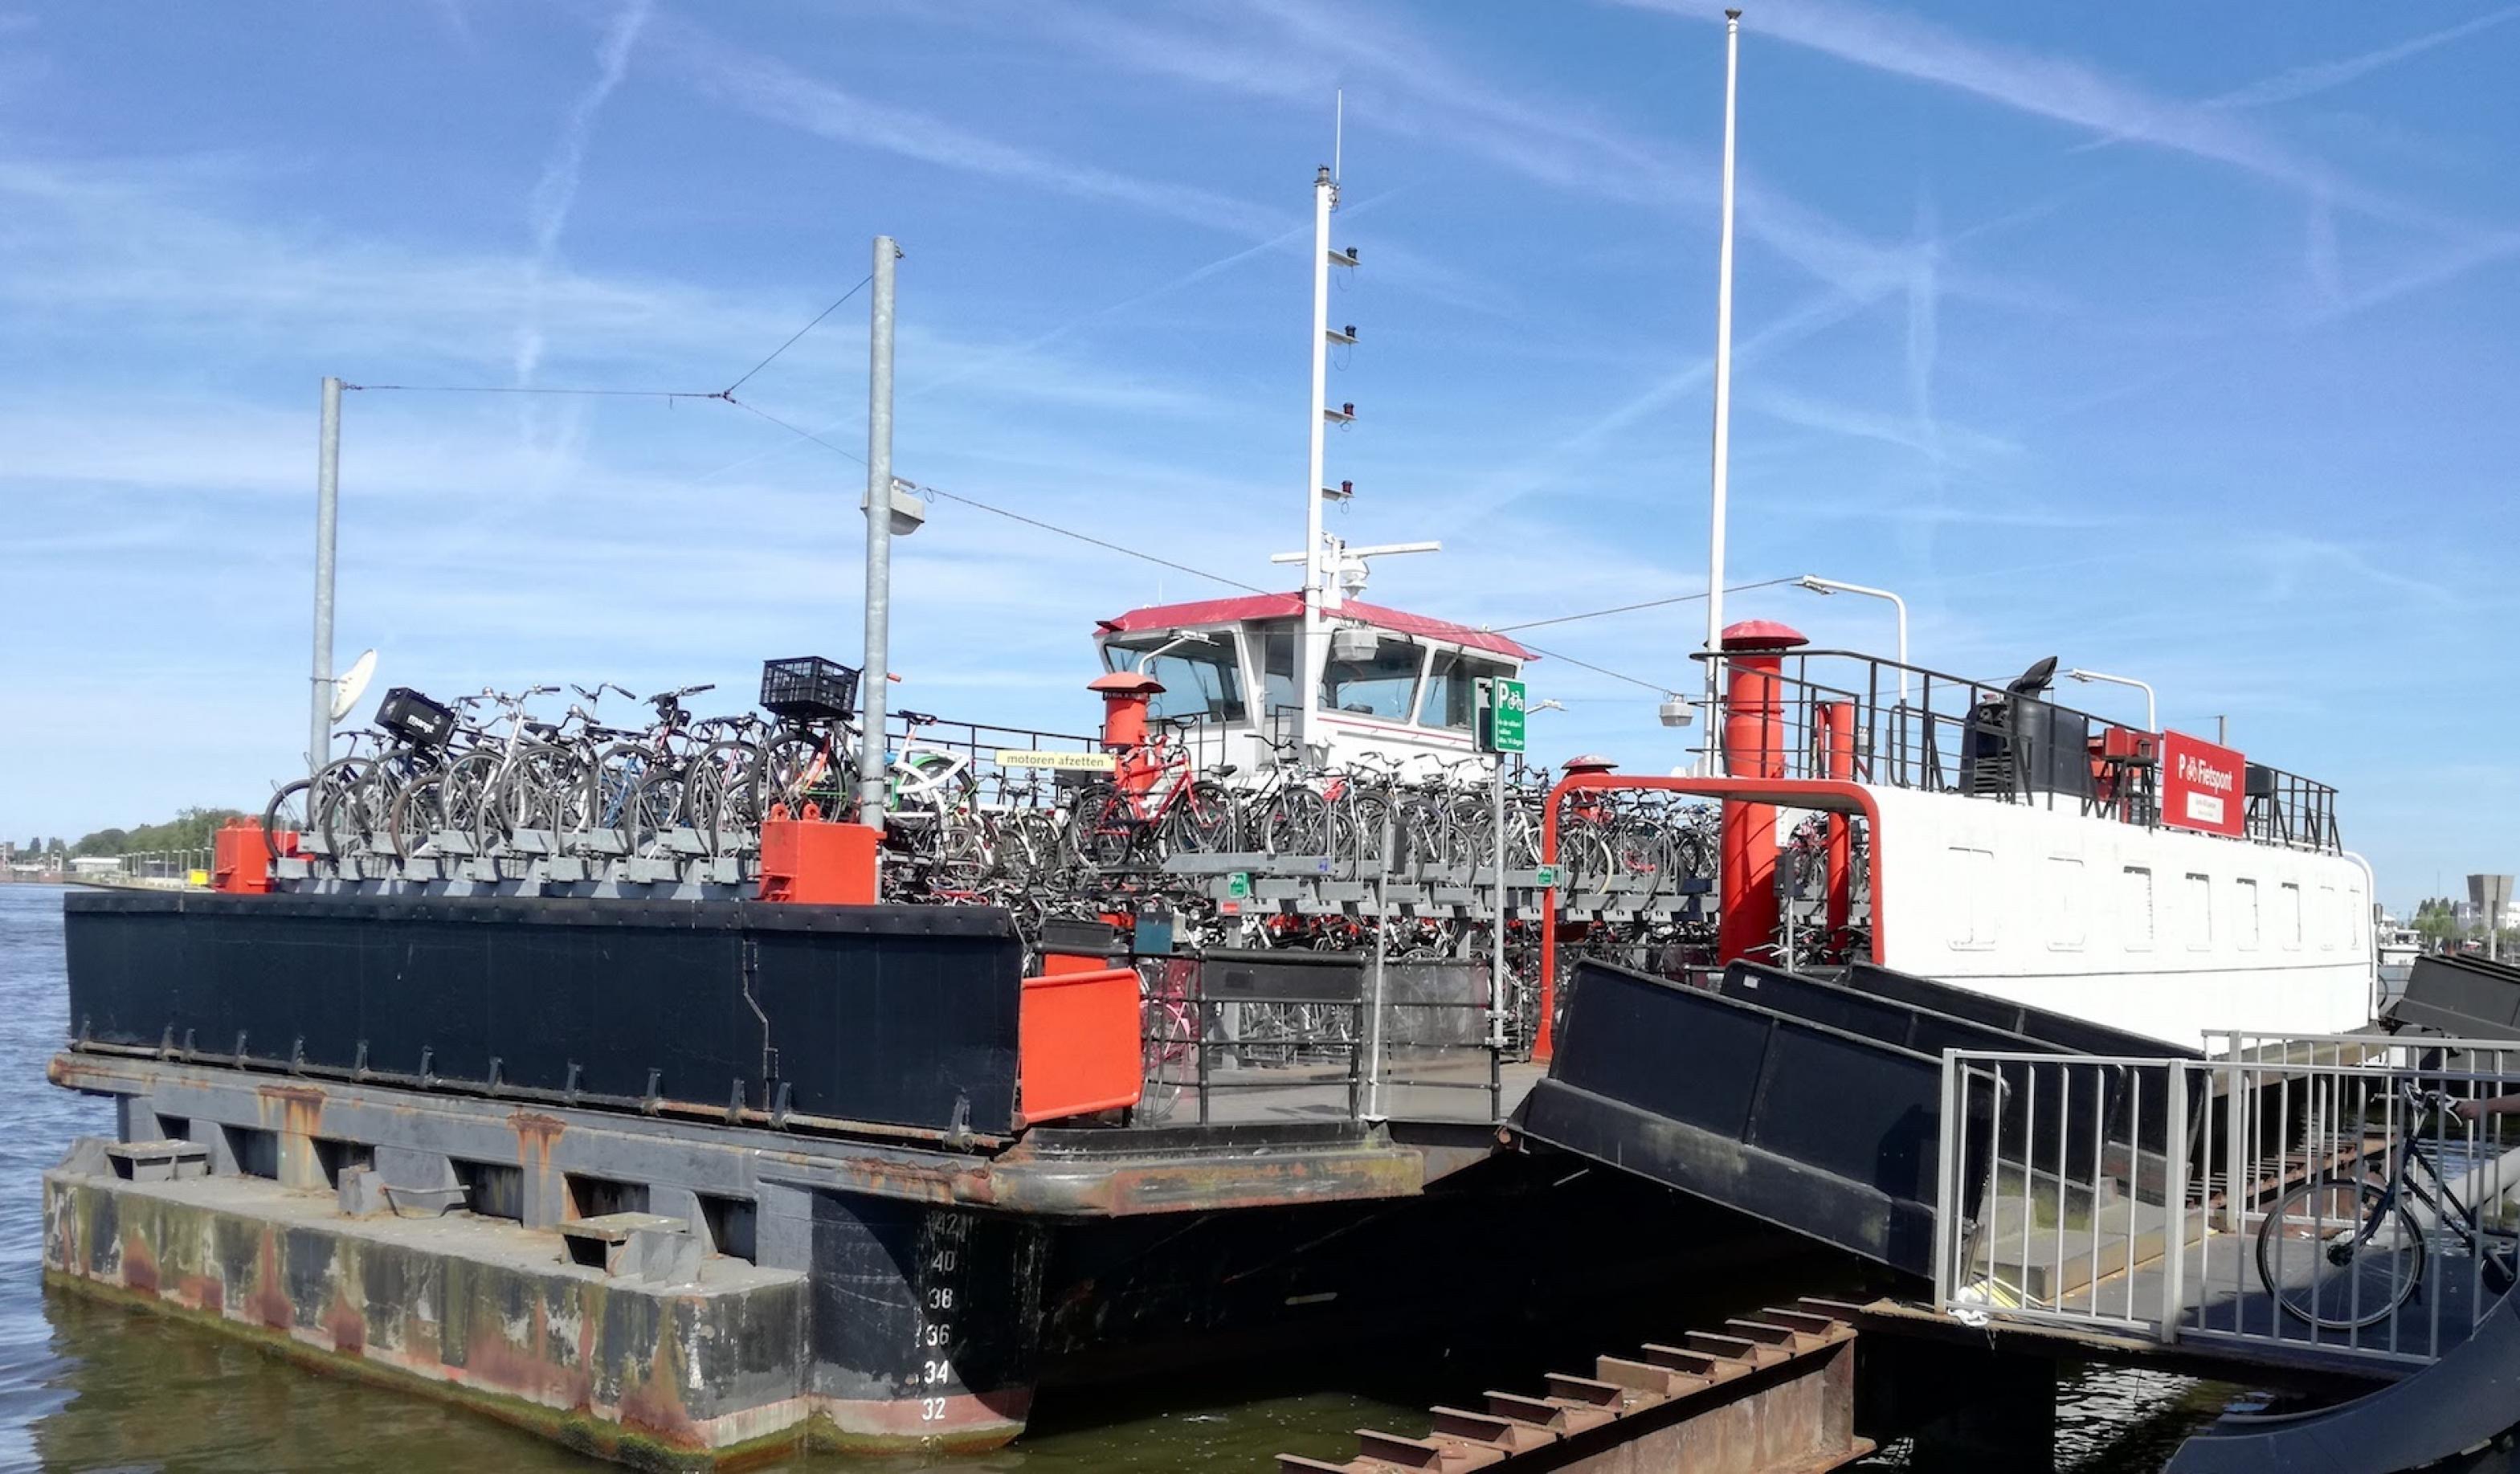 Am Hafen dockt ein Schiff an, das beladen mit Fahrrädern ist.